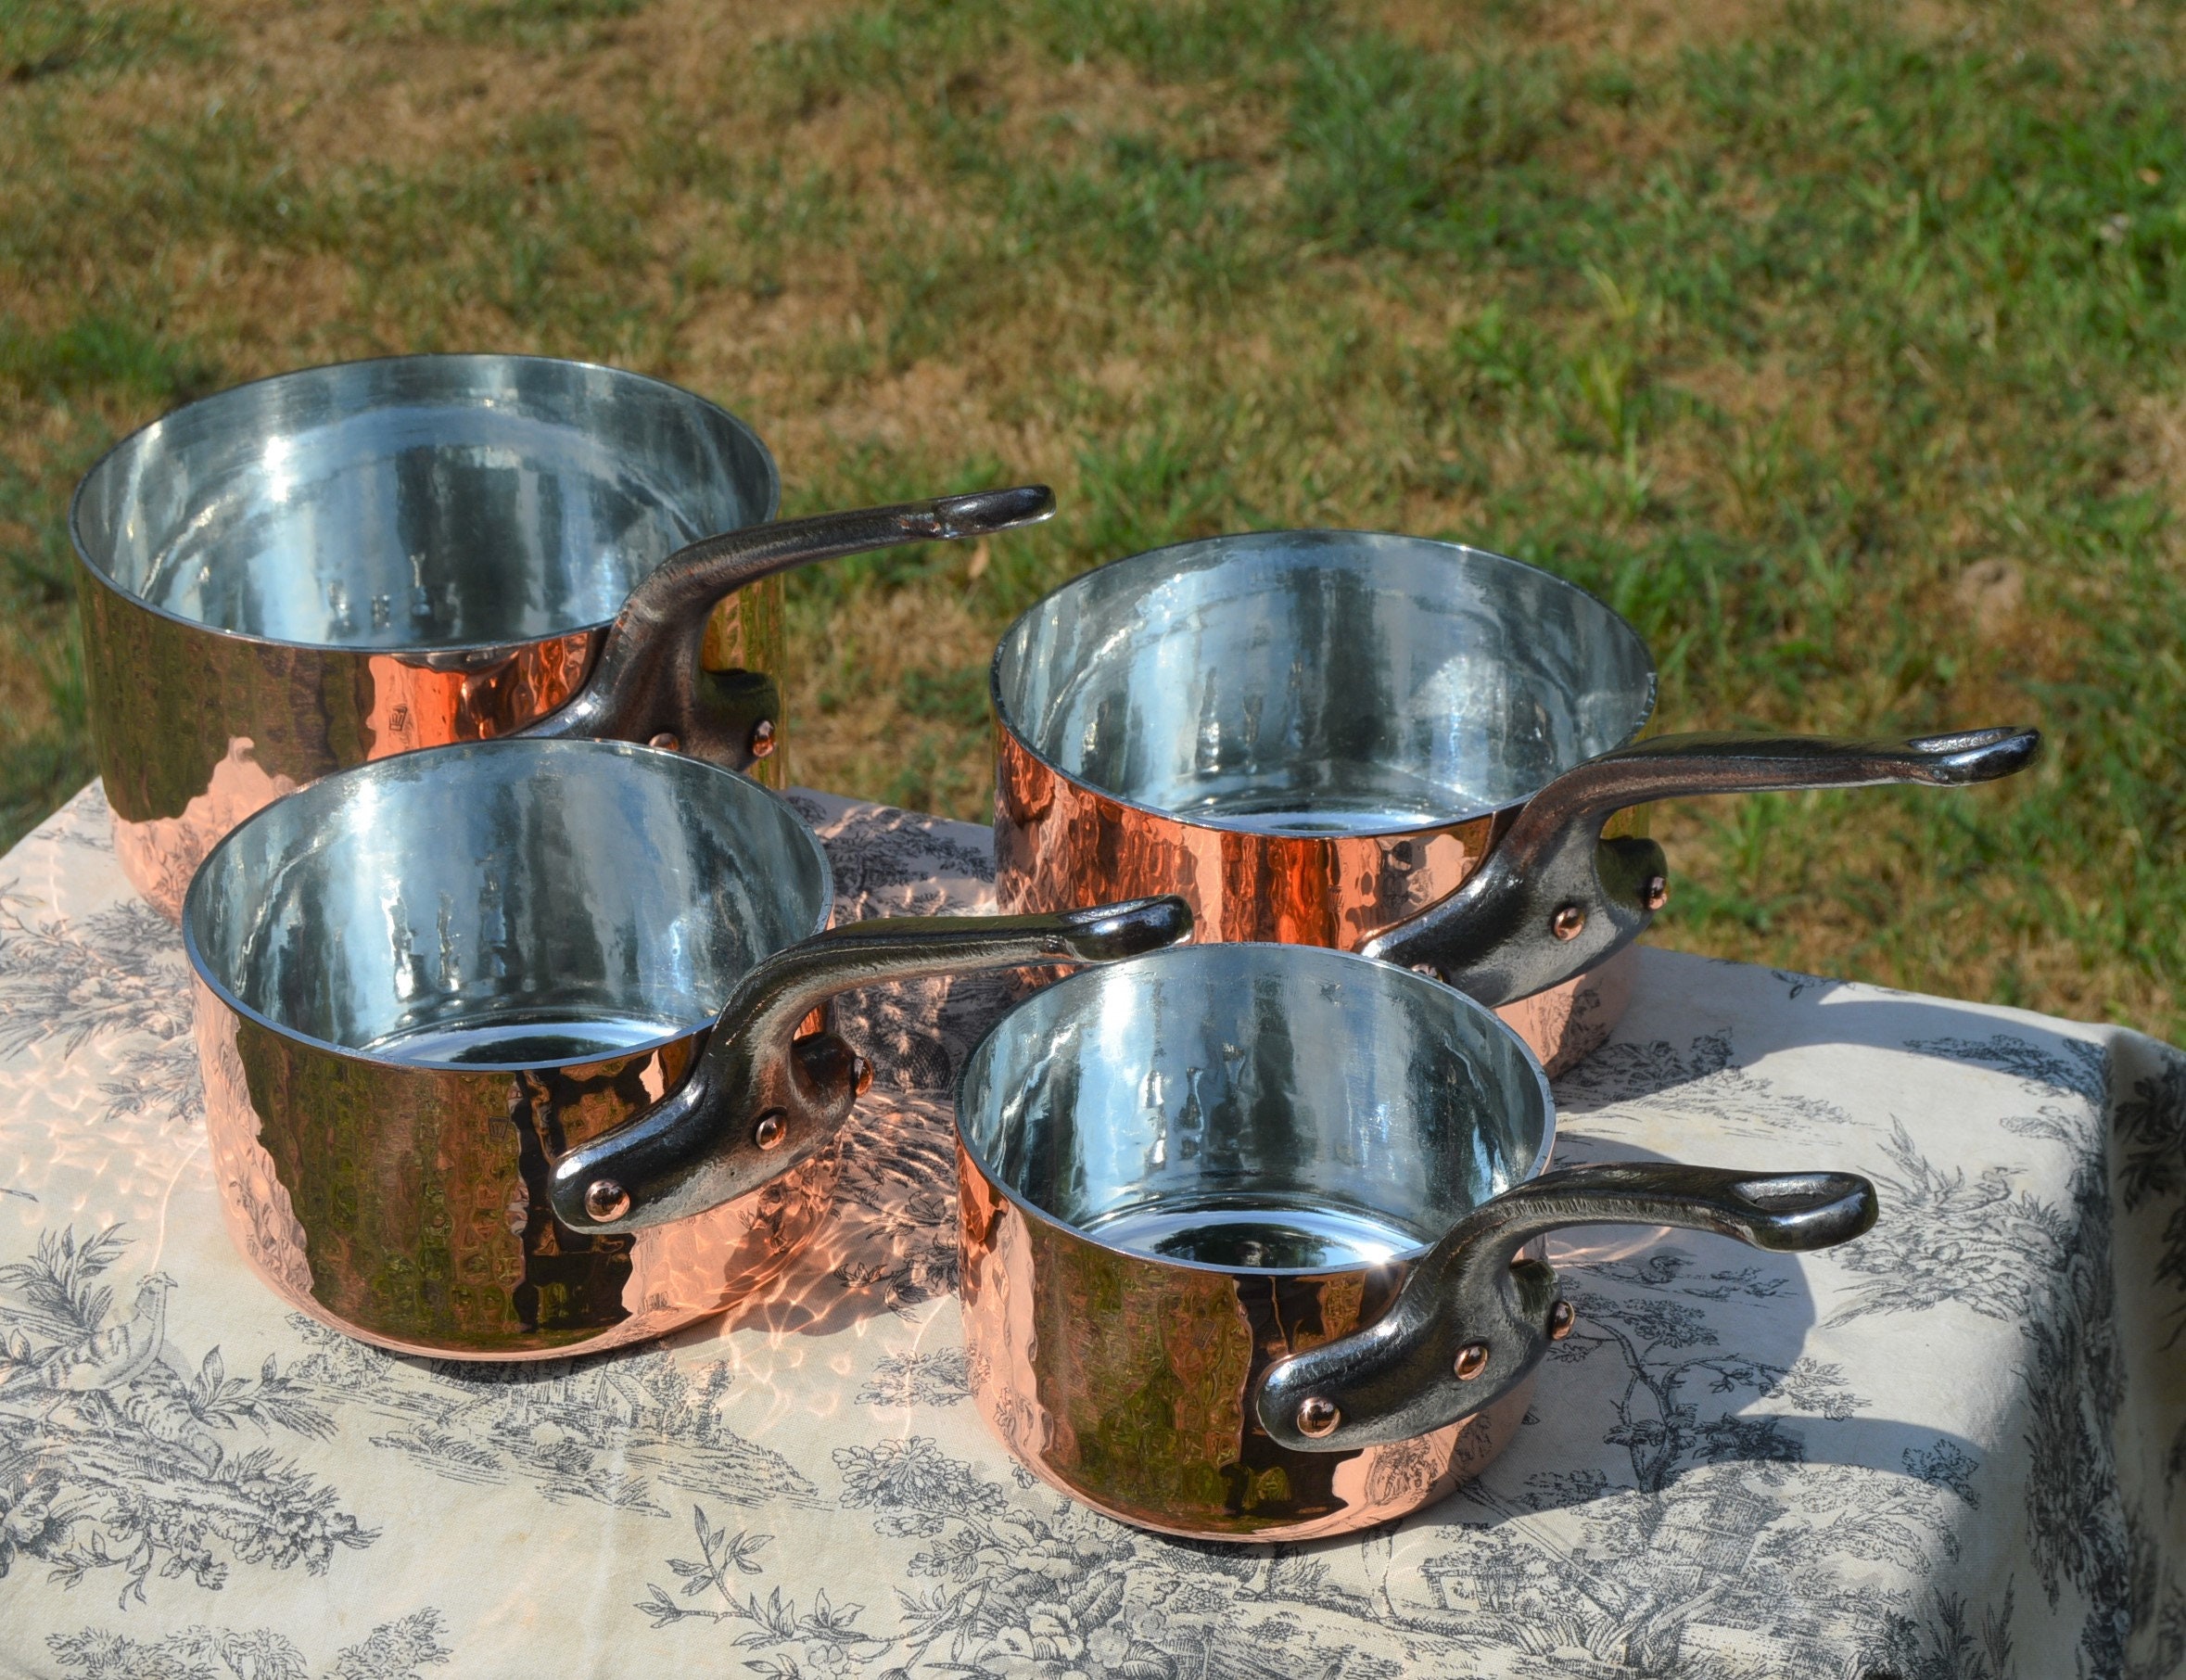 Matfer Bourgeat Copper Frying Pan - 9.5